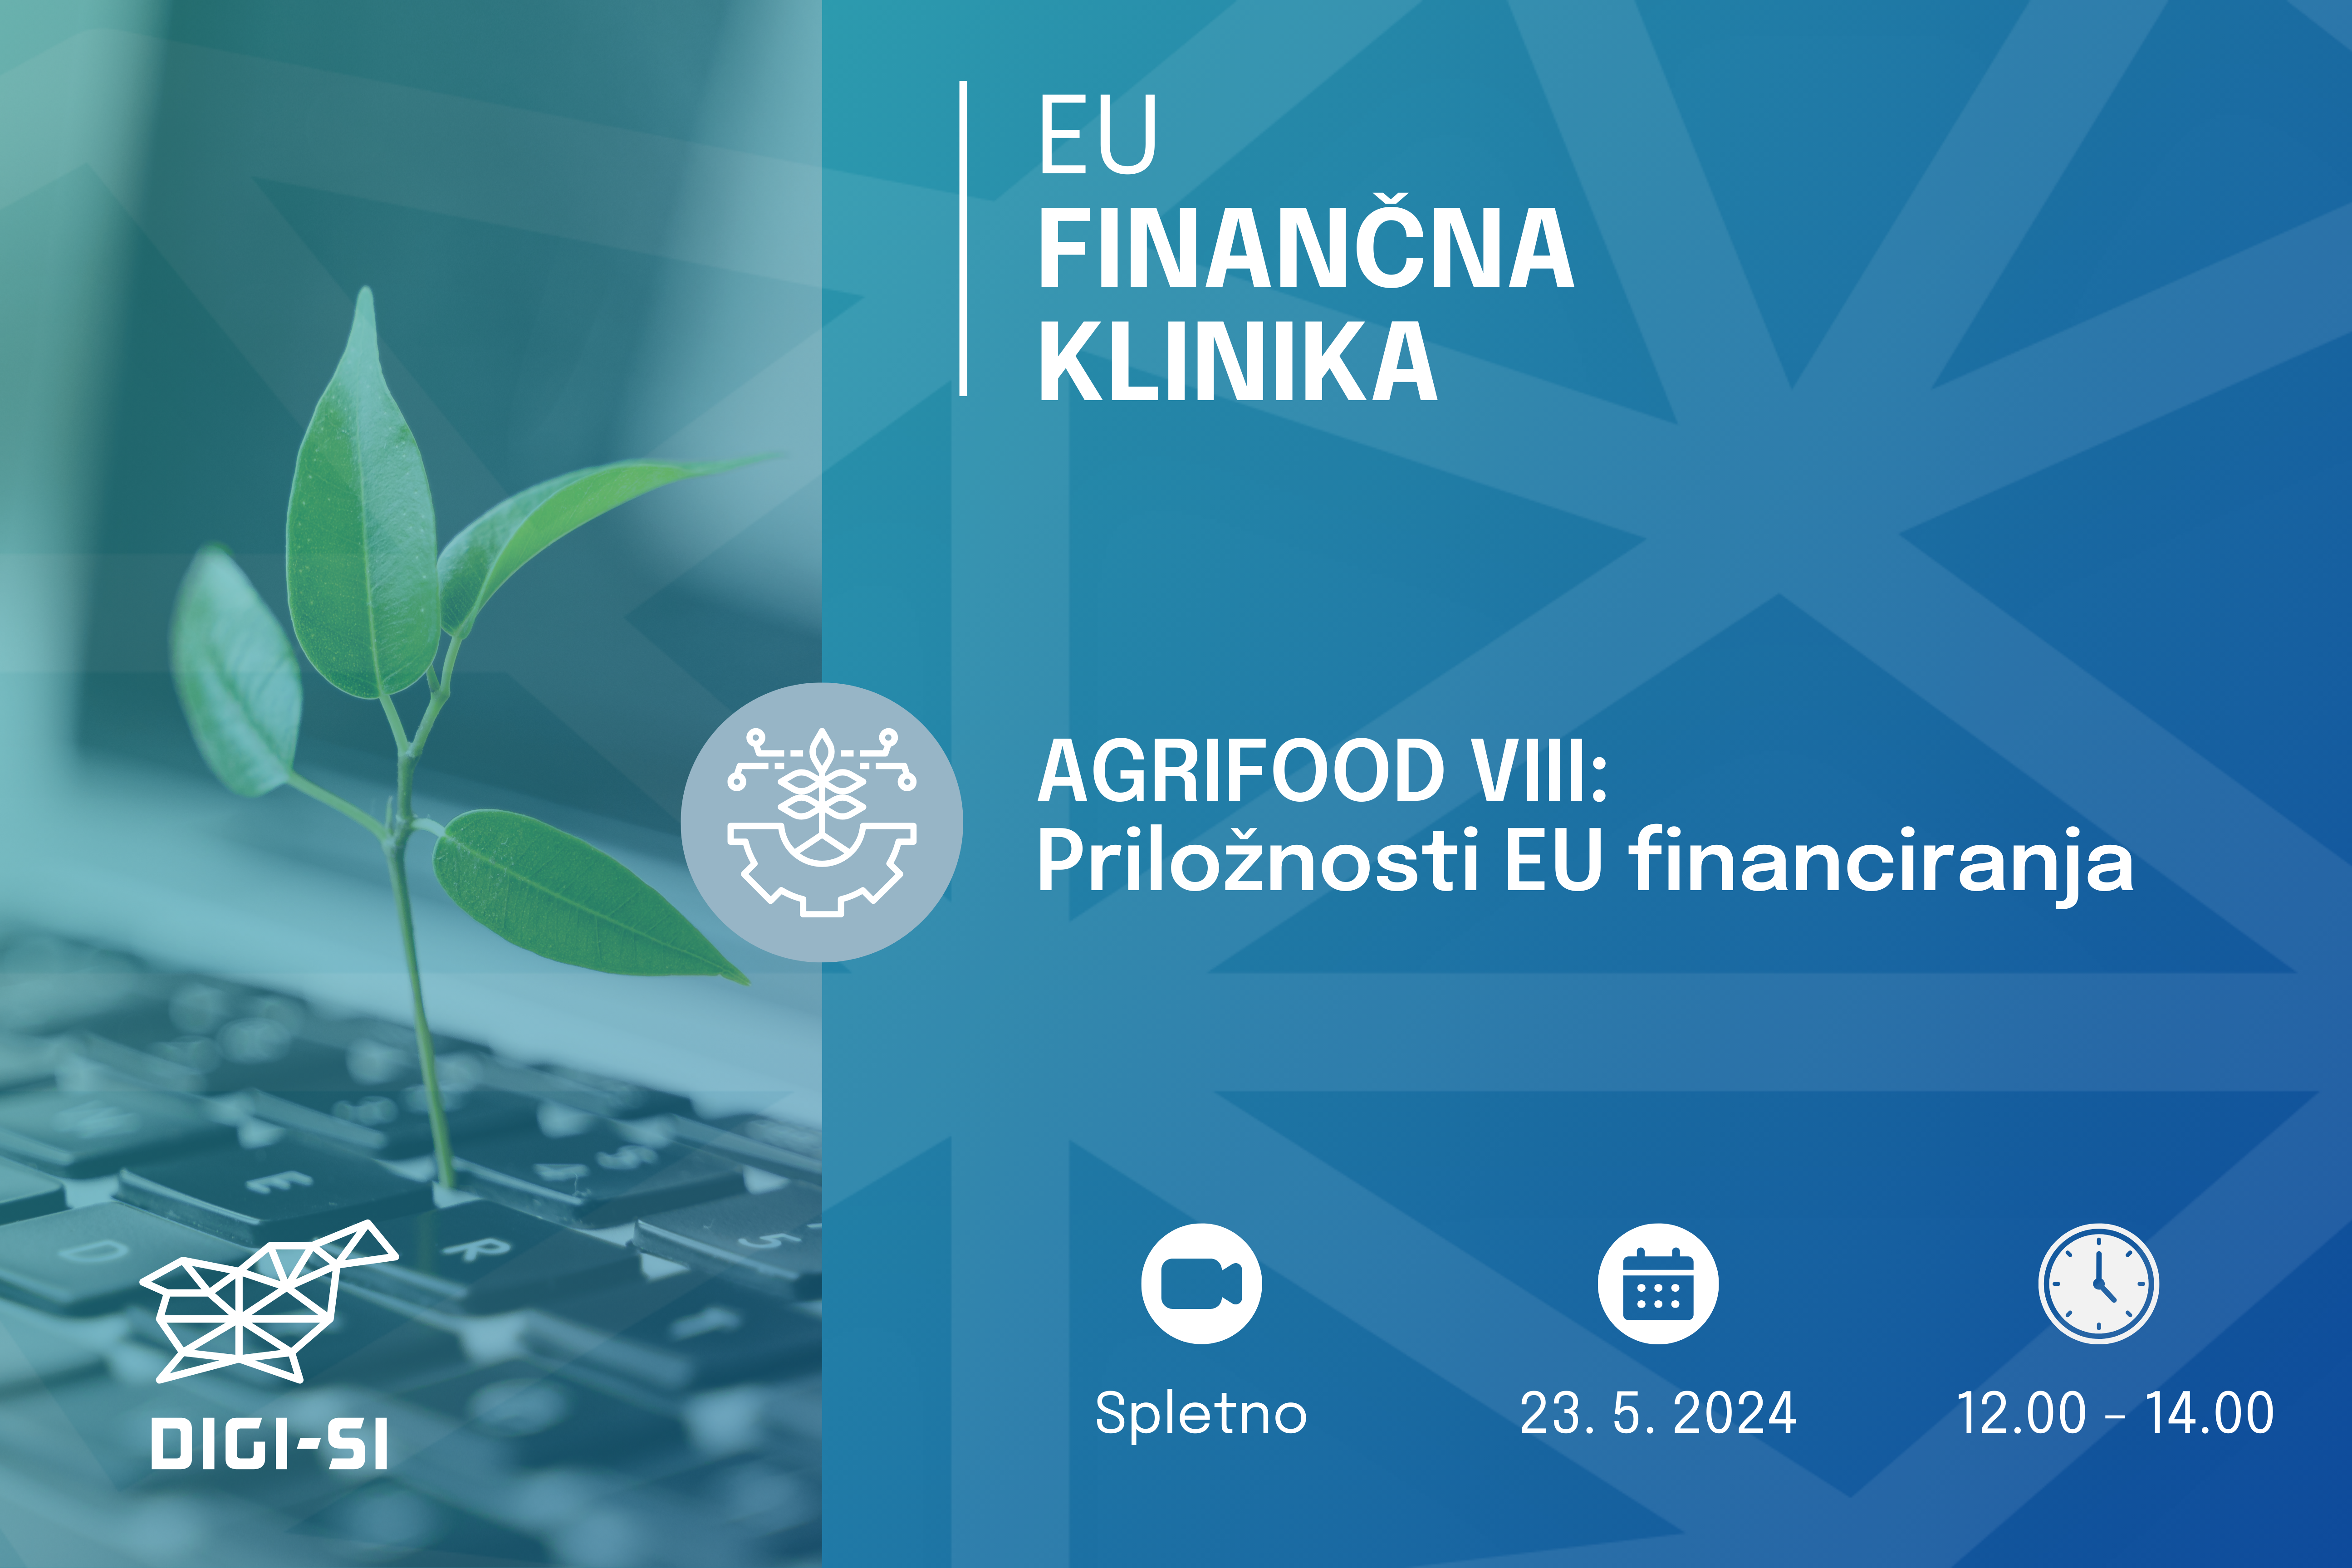 EU Finančna klinika AGRIFOOD VIII